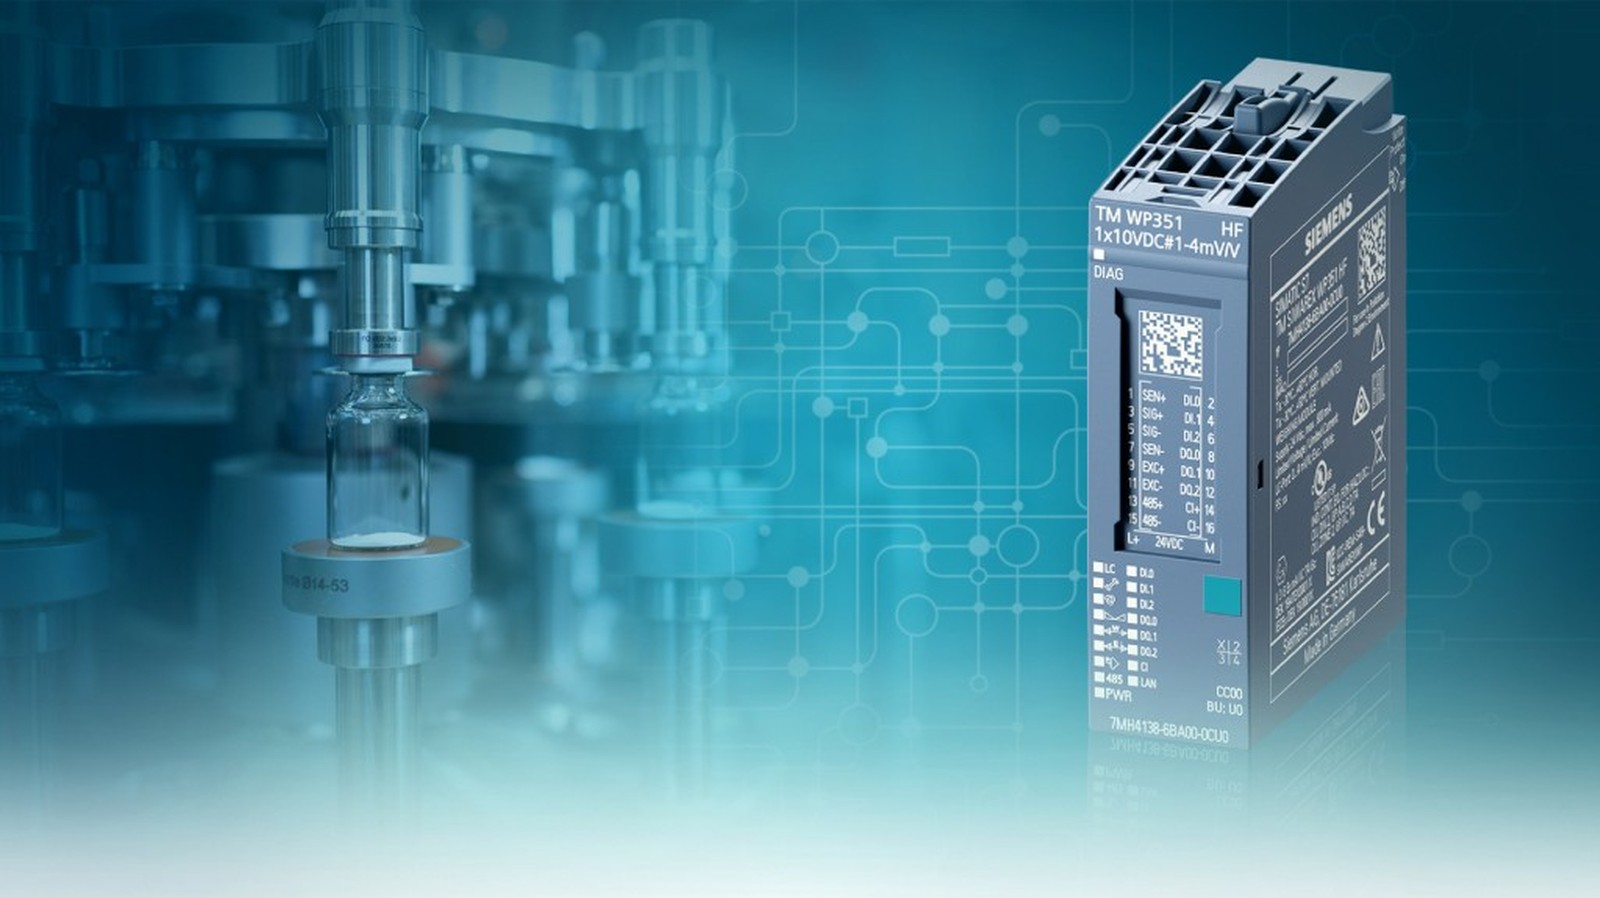 Siwarex WP351 ist die neueste Entwicklung für intelligente Wägeautomatisierung von Siemens. Mit 20 Millimetern Breite und 65 Millimetern Höhe zählt das Modul zu den kleinsten, verfügbaren Wägeelektroniken am Markt.